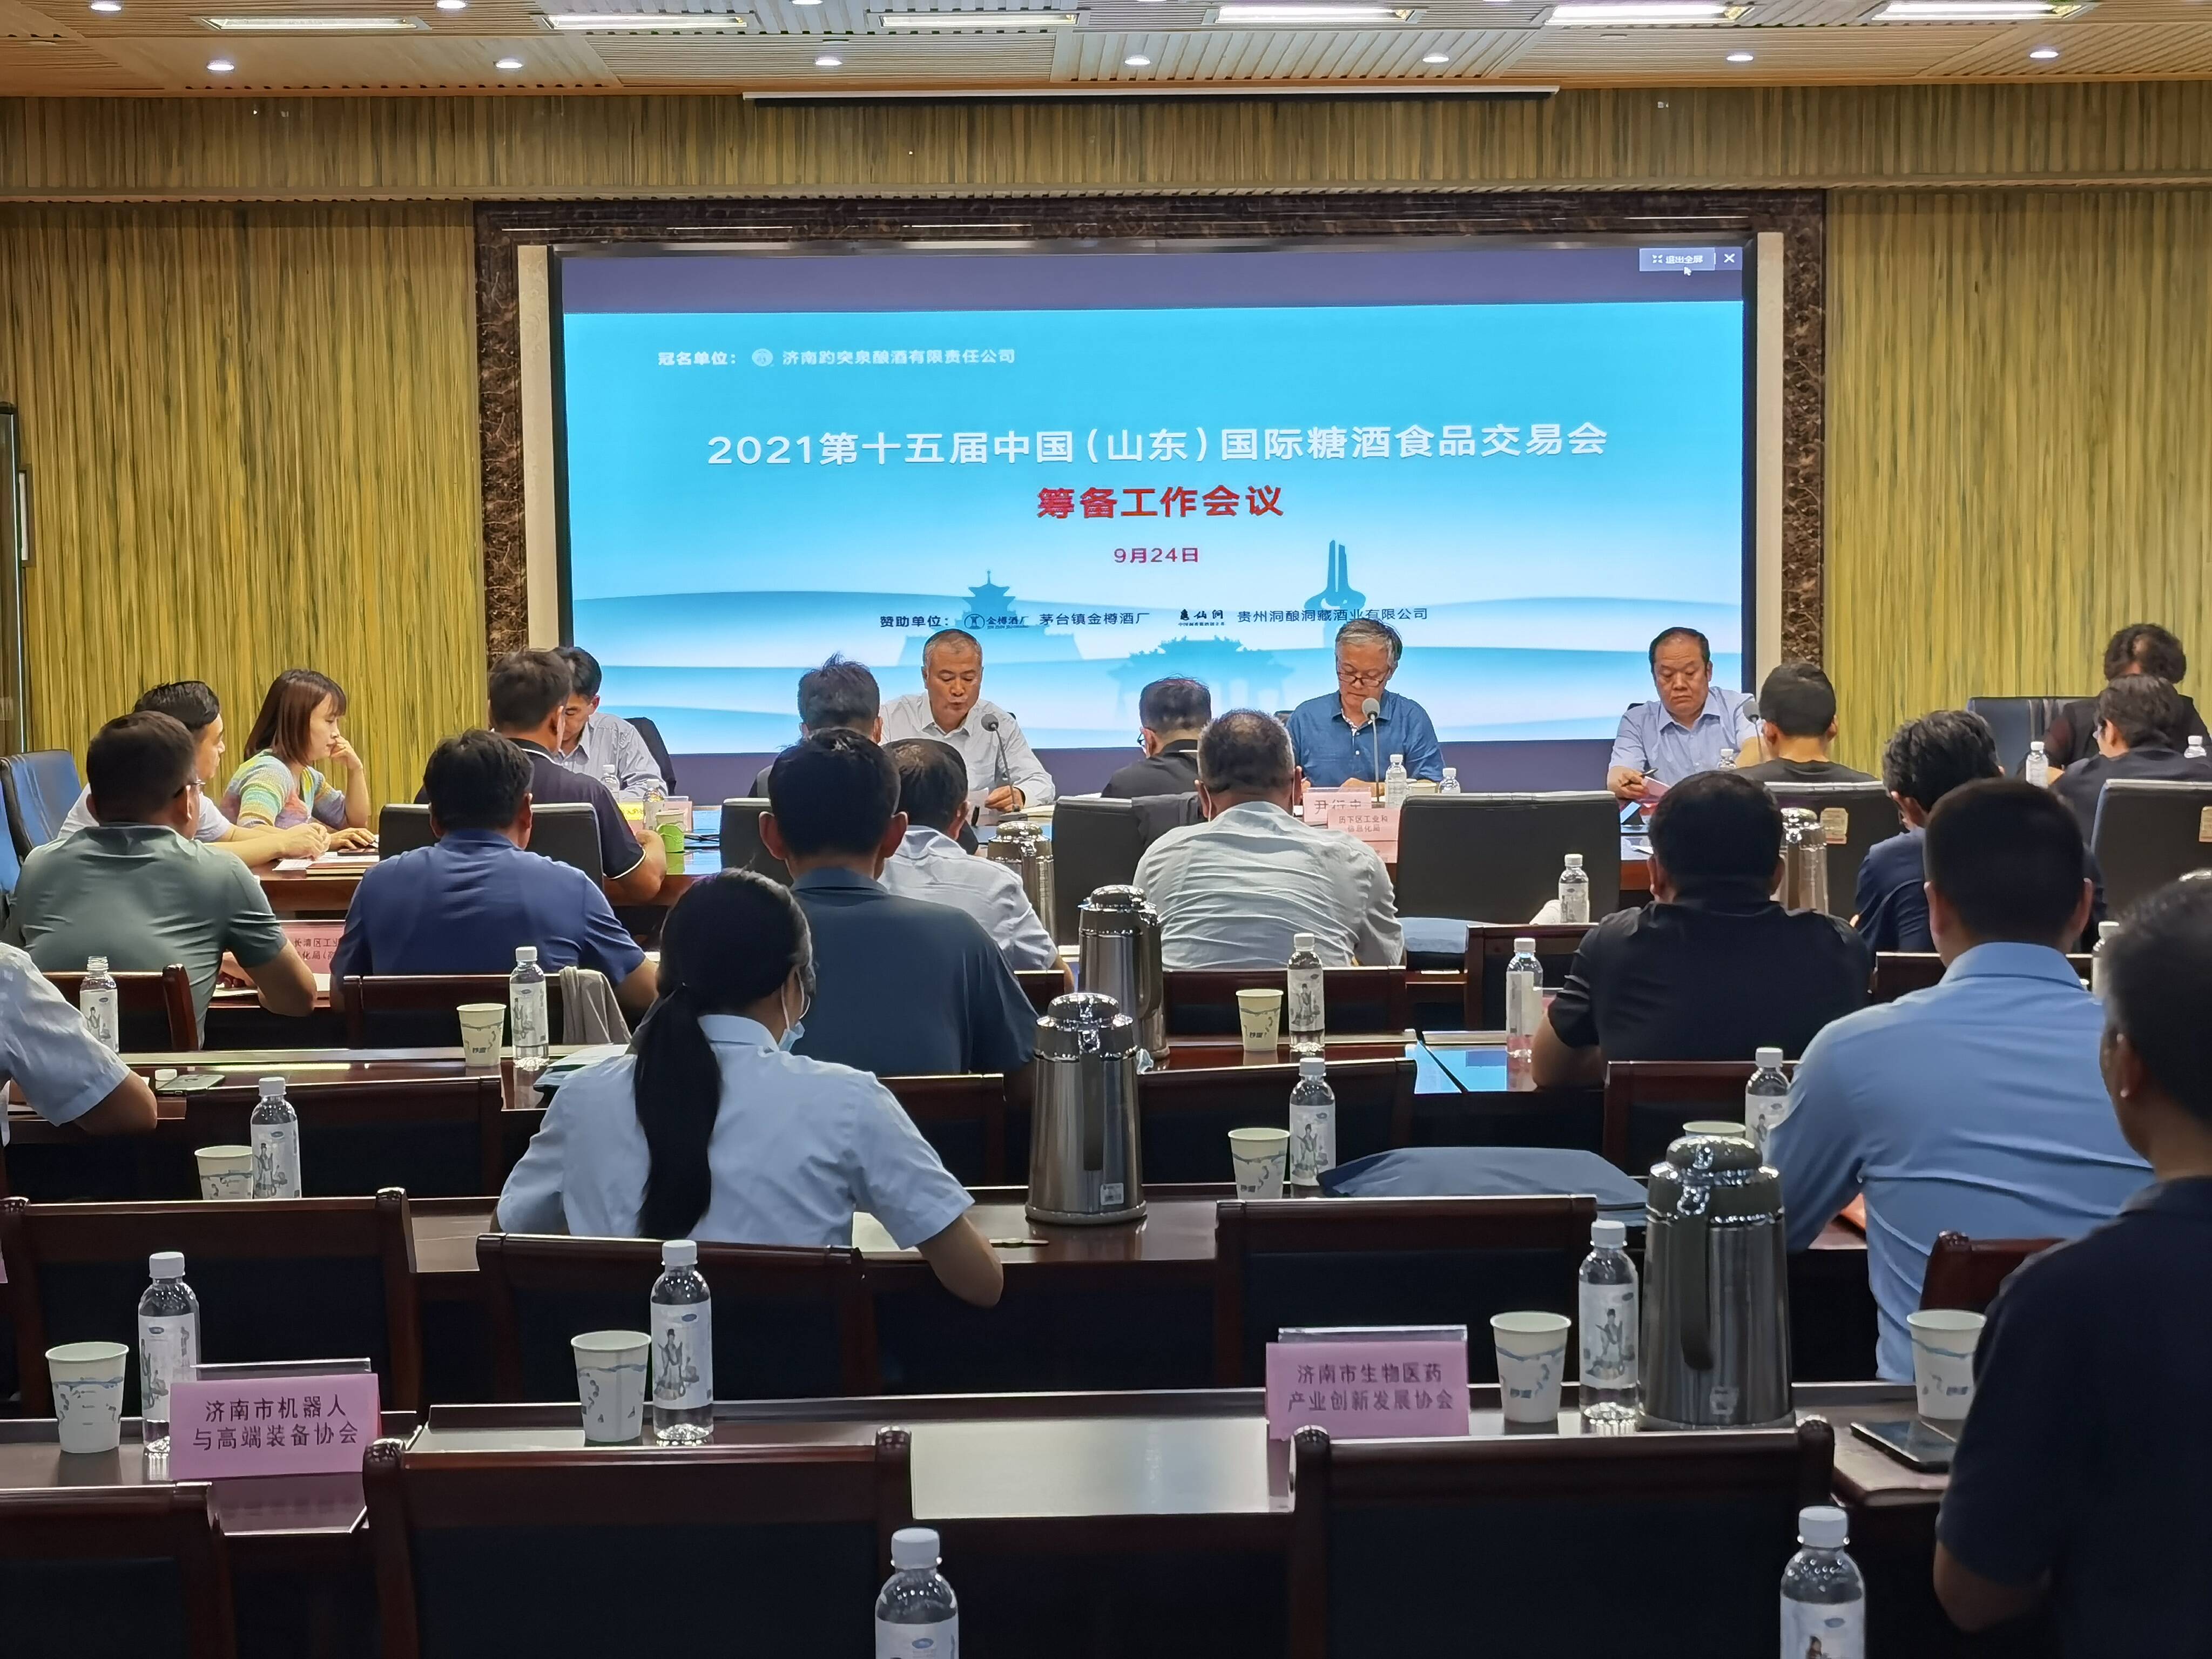 八大主题展、两千余个展位 2021第十五届中国(山东)国际糖酒食品交易会将于11月19日在济南开幕